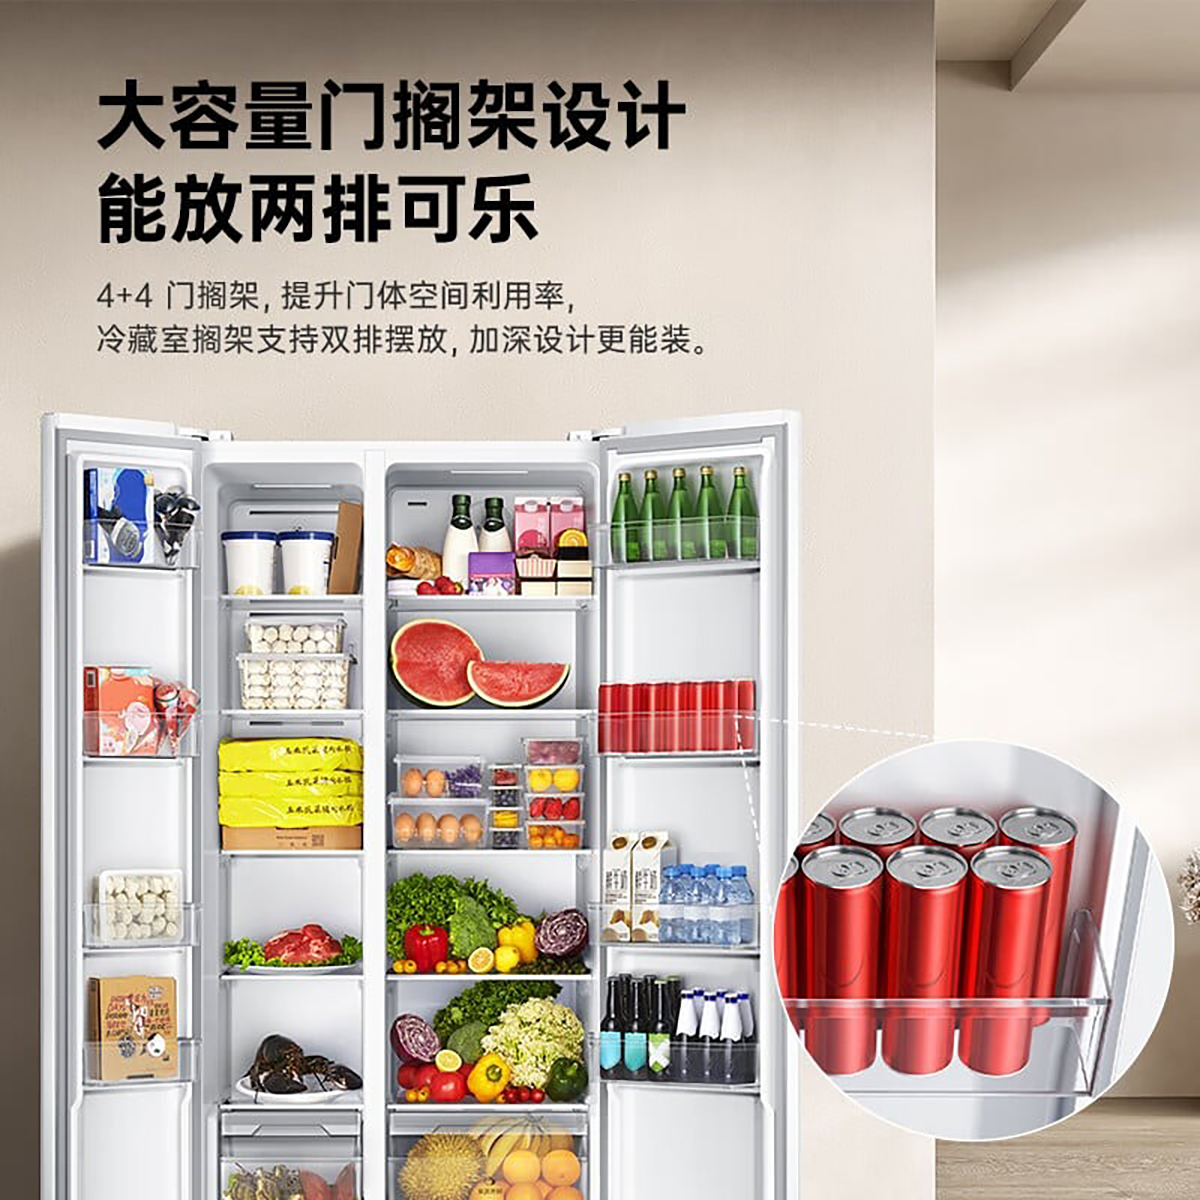 Tủ lạnh mới của Xiaomi có 2 ngăn khác nhau